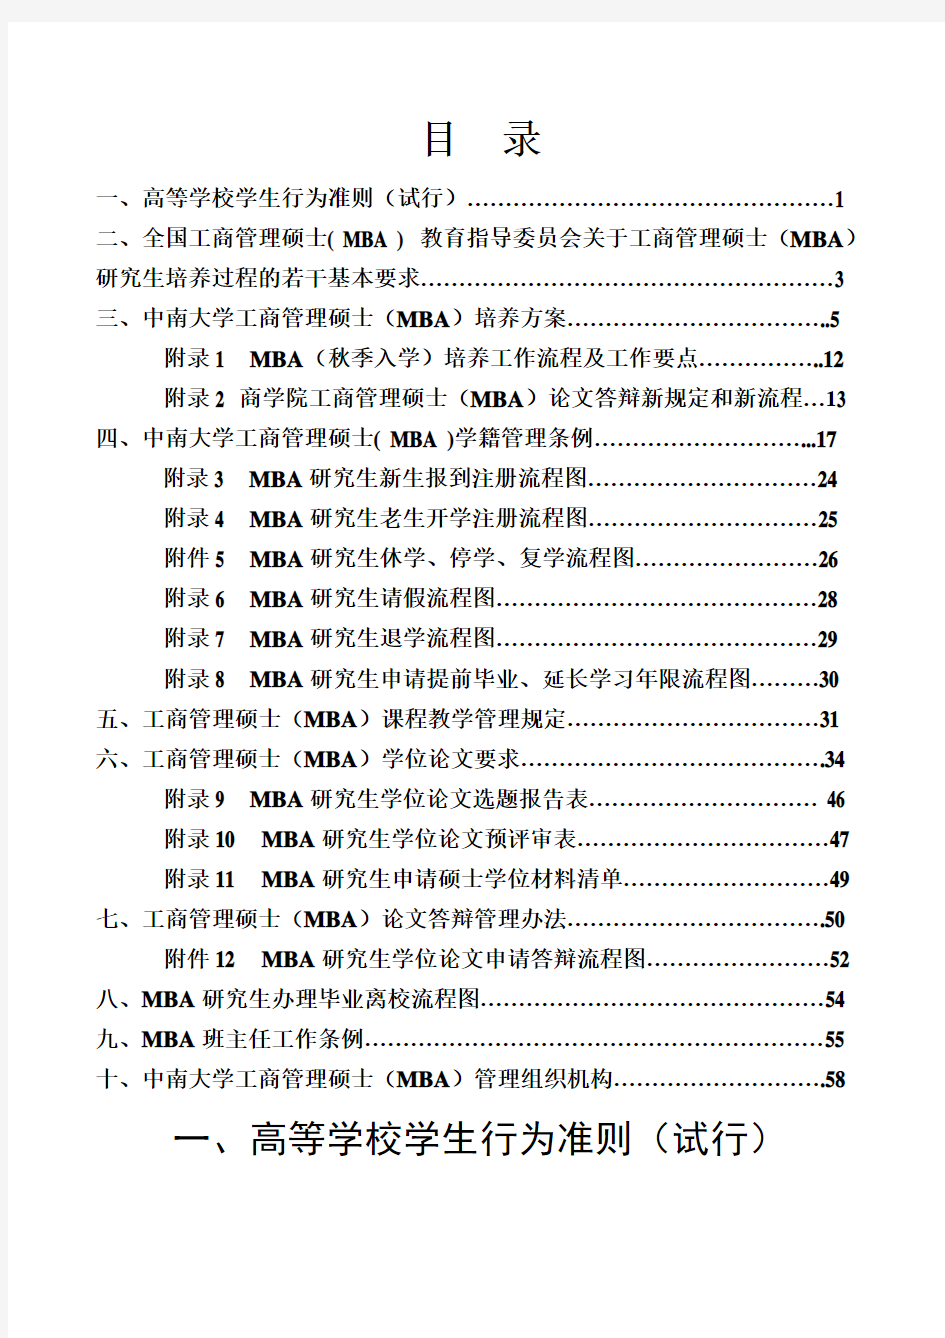 2020工商管理硕士(MBA)学生手册-中南大学商学院